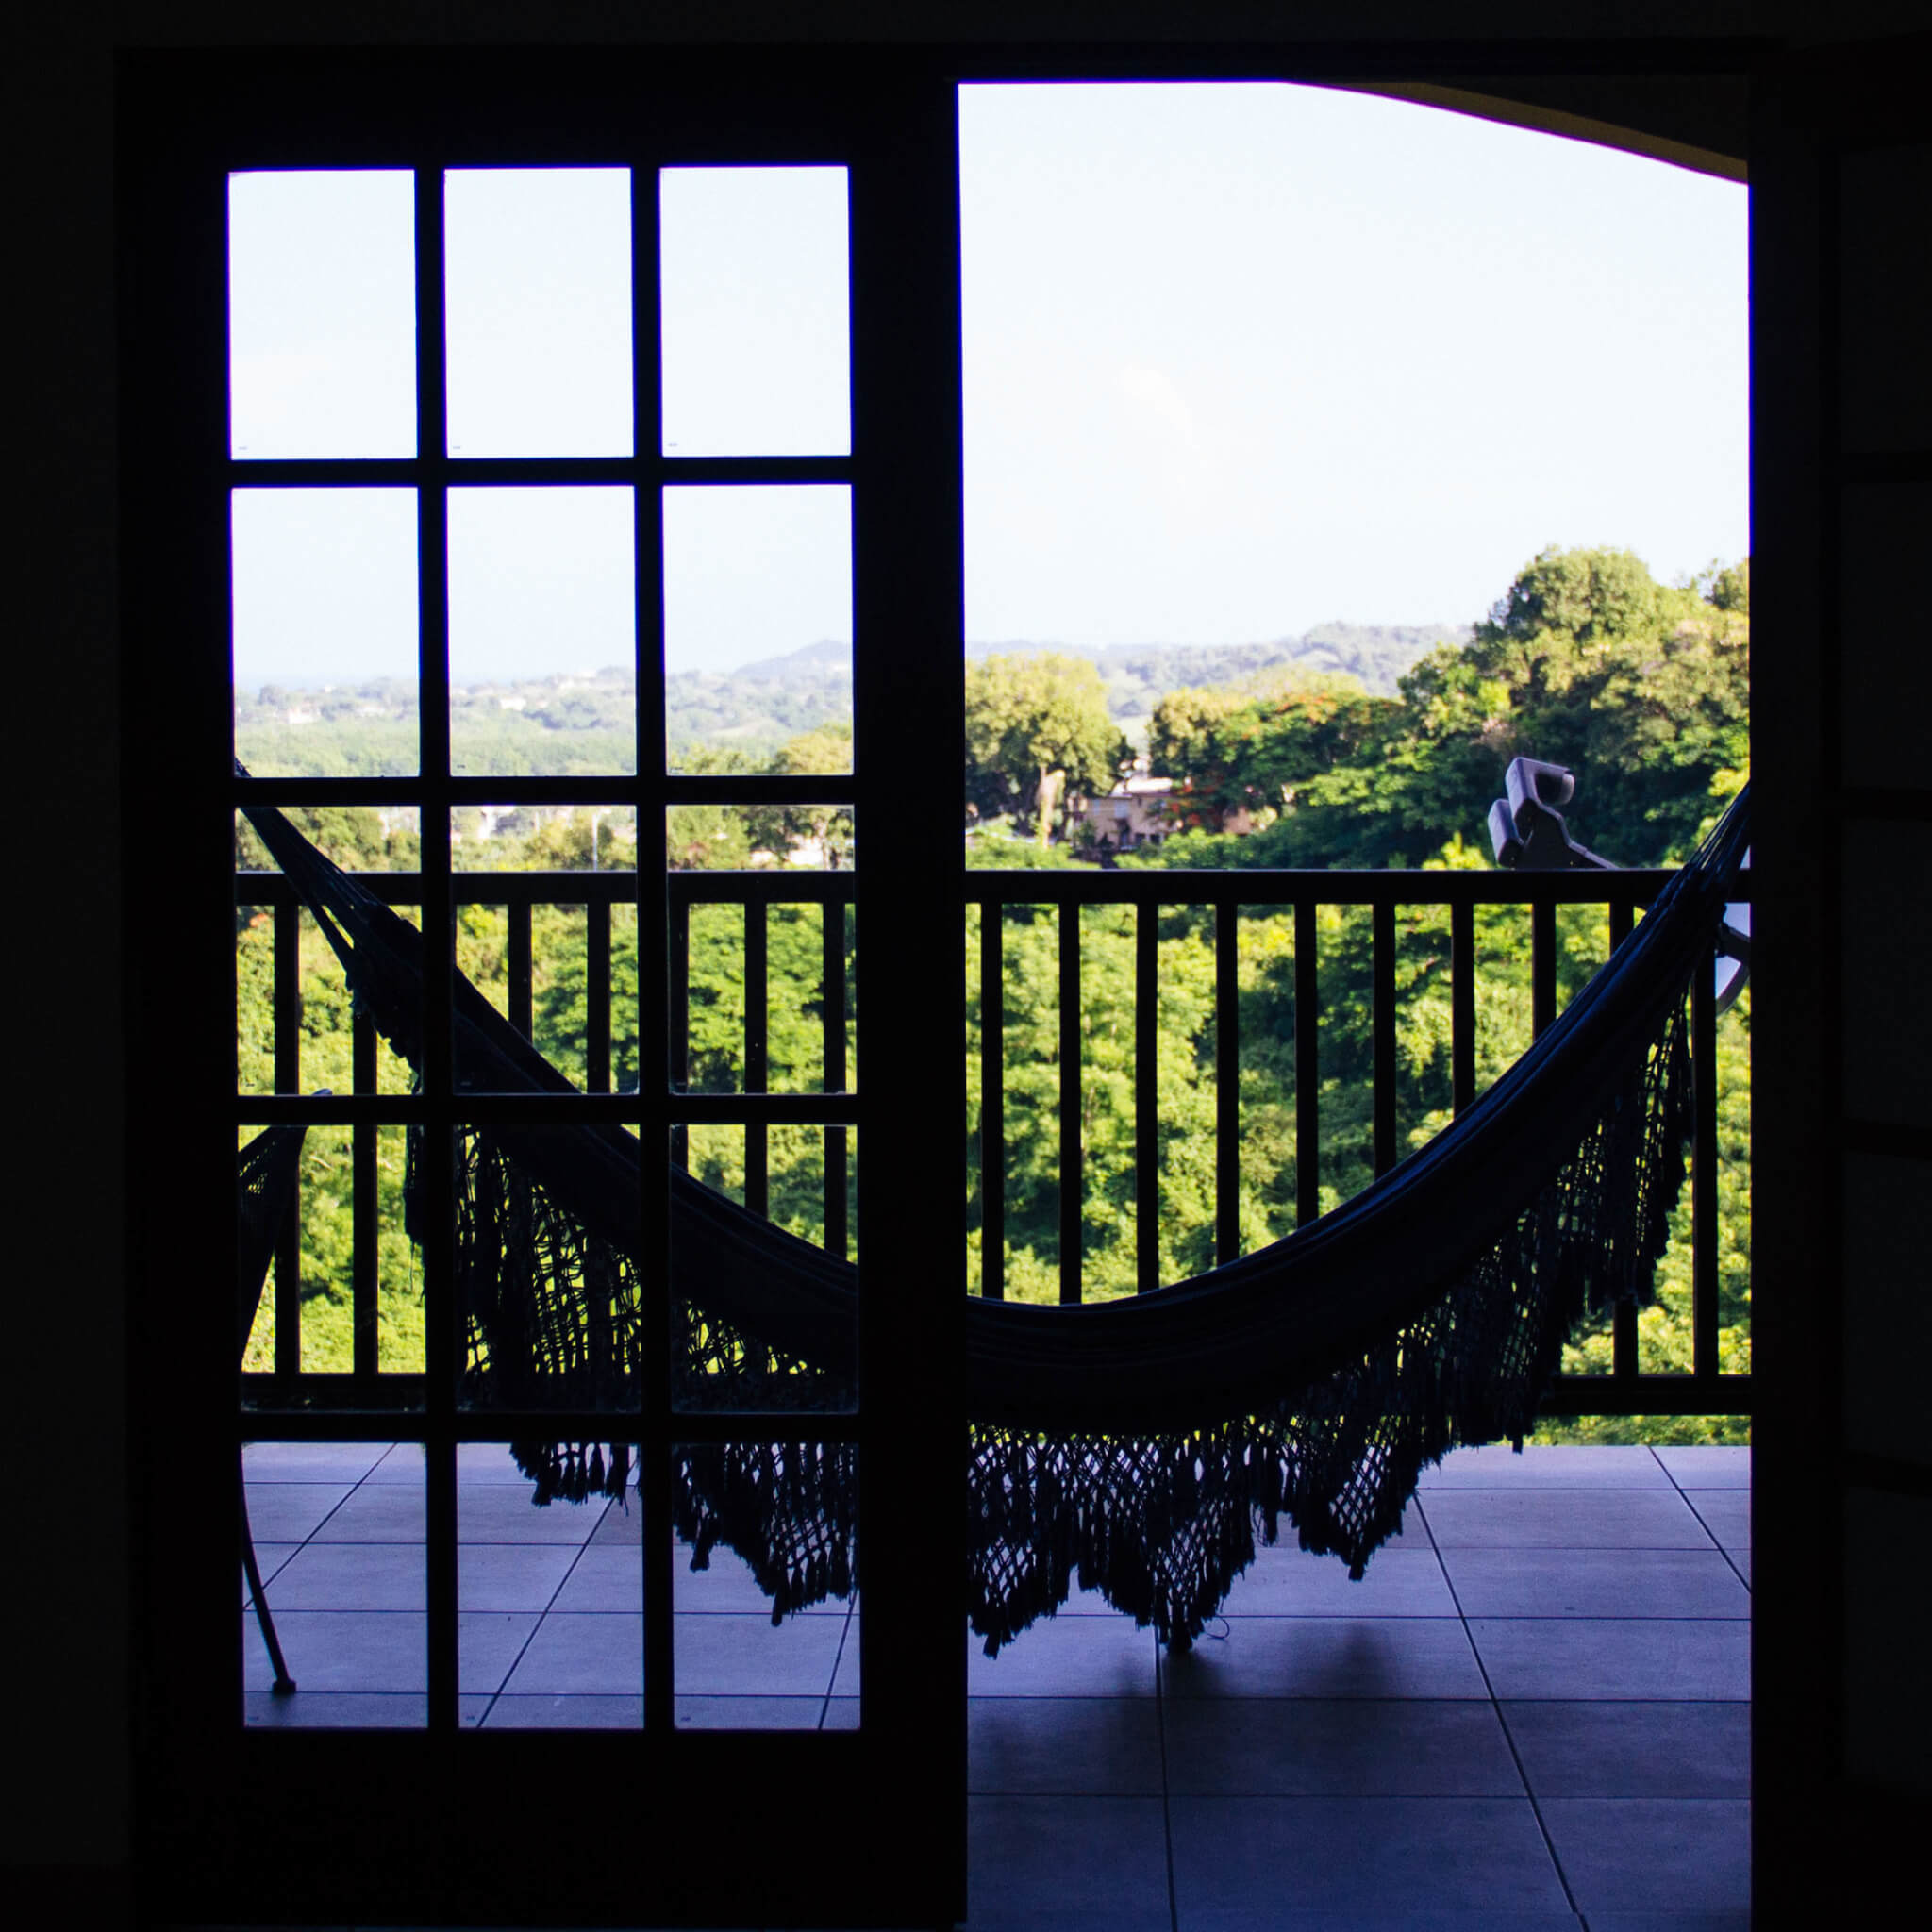 Hammock on the porch in Rincon, Puerto Rico | Uno Dos Trae